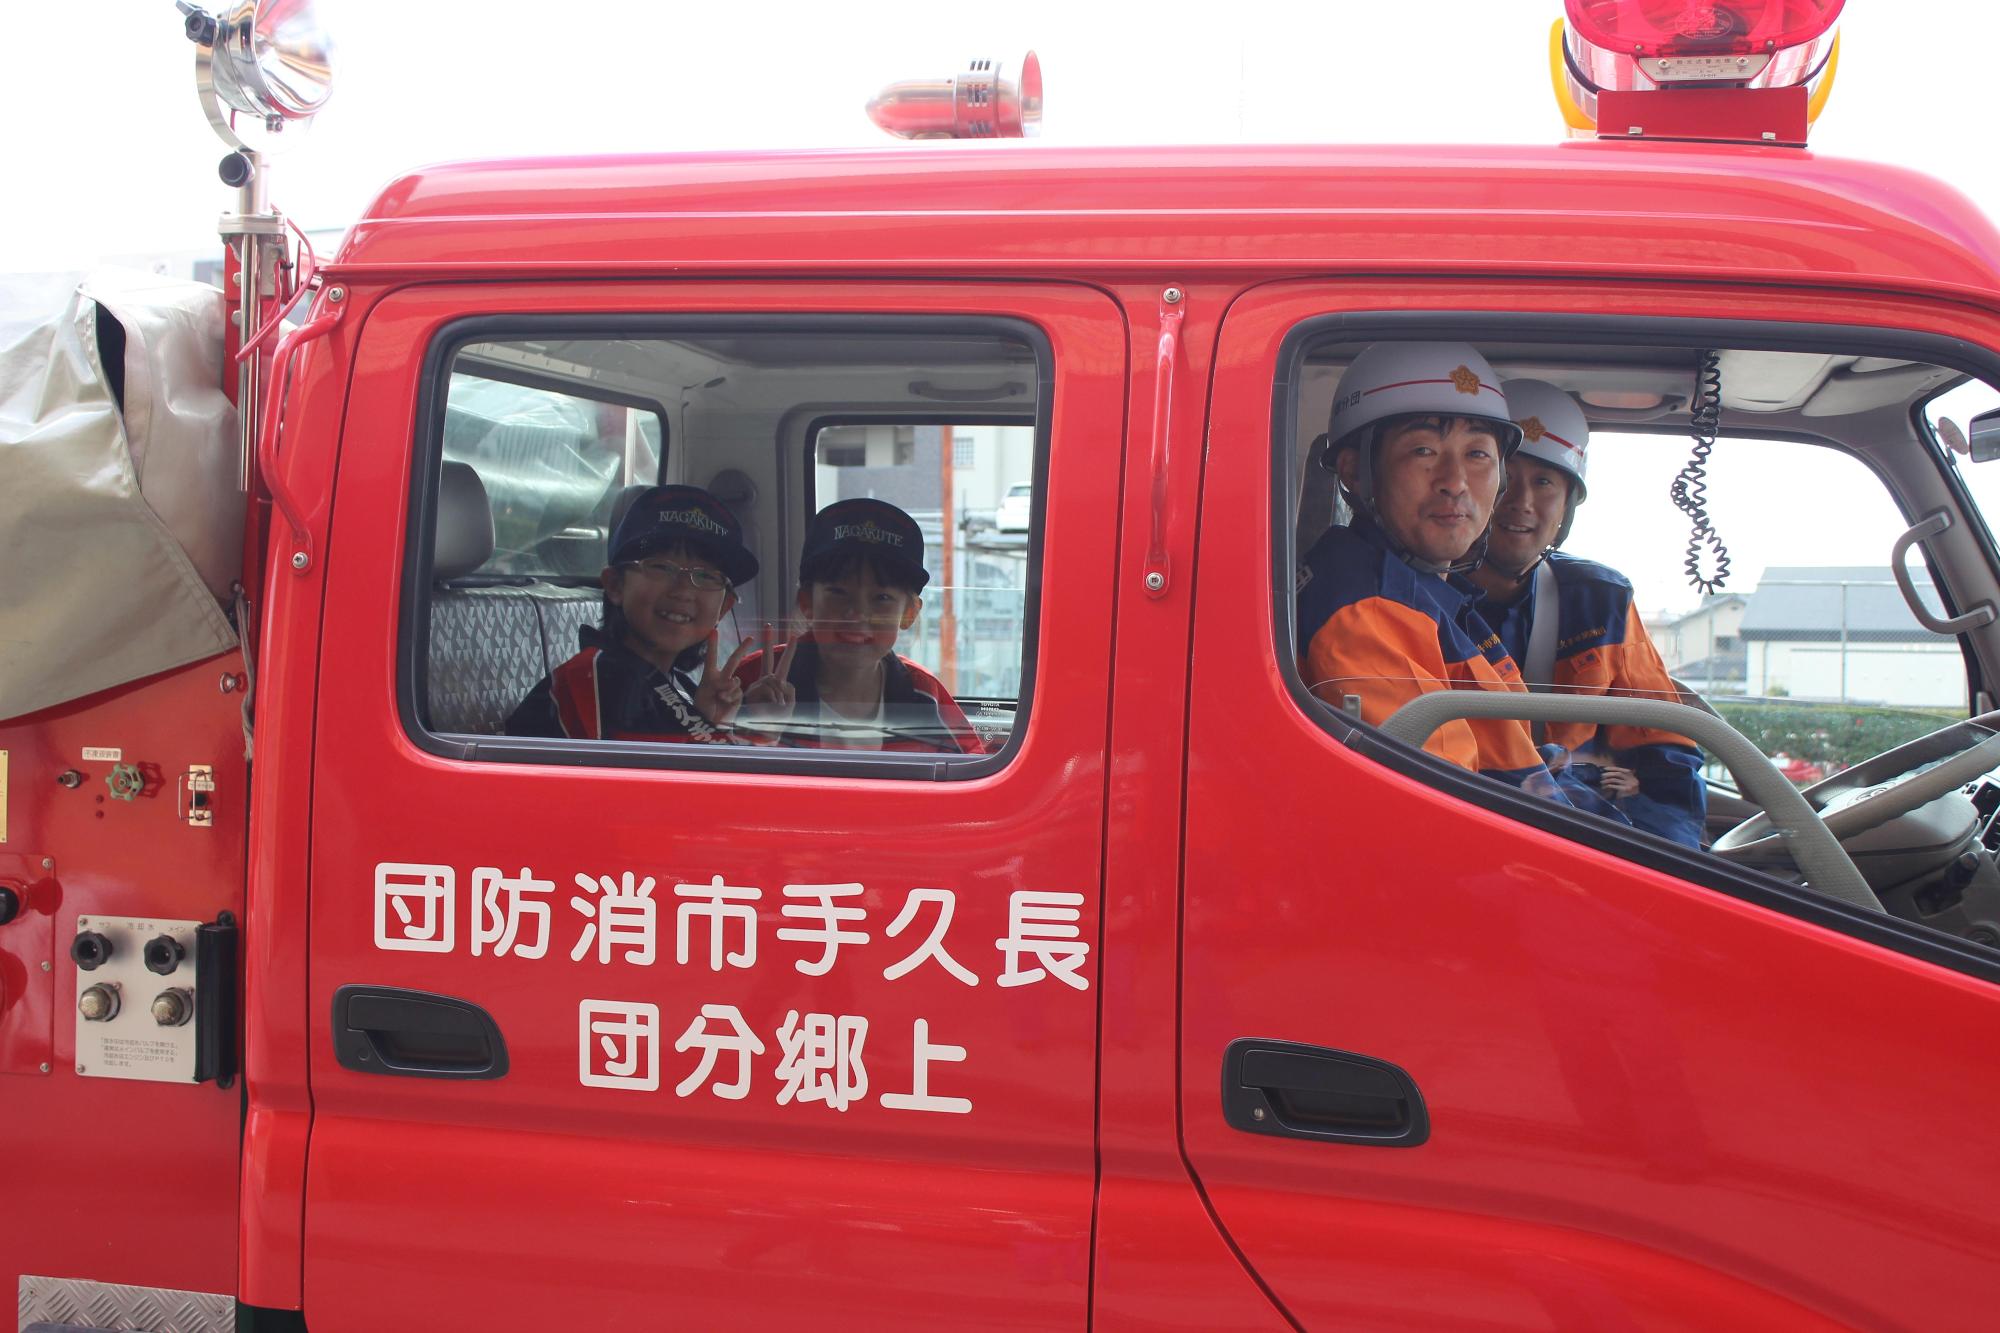 消防団員2名が消防車両の運転席と助手席に乗っており、後部座席に乗ったキッズ団員2名がピースサインをしている写真